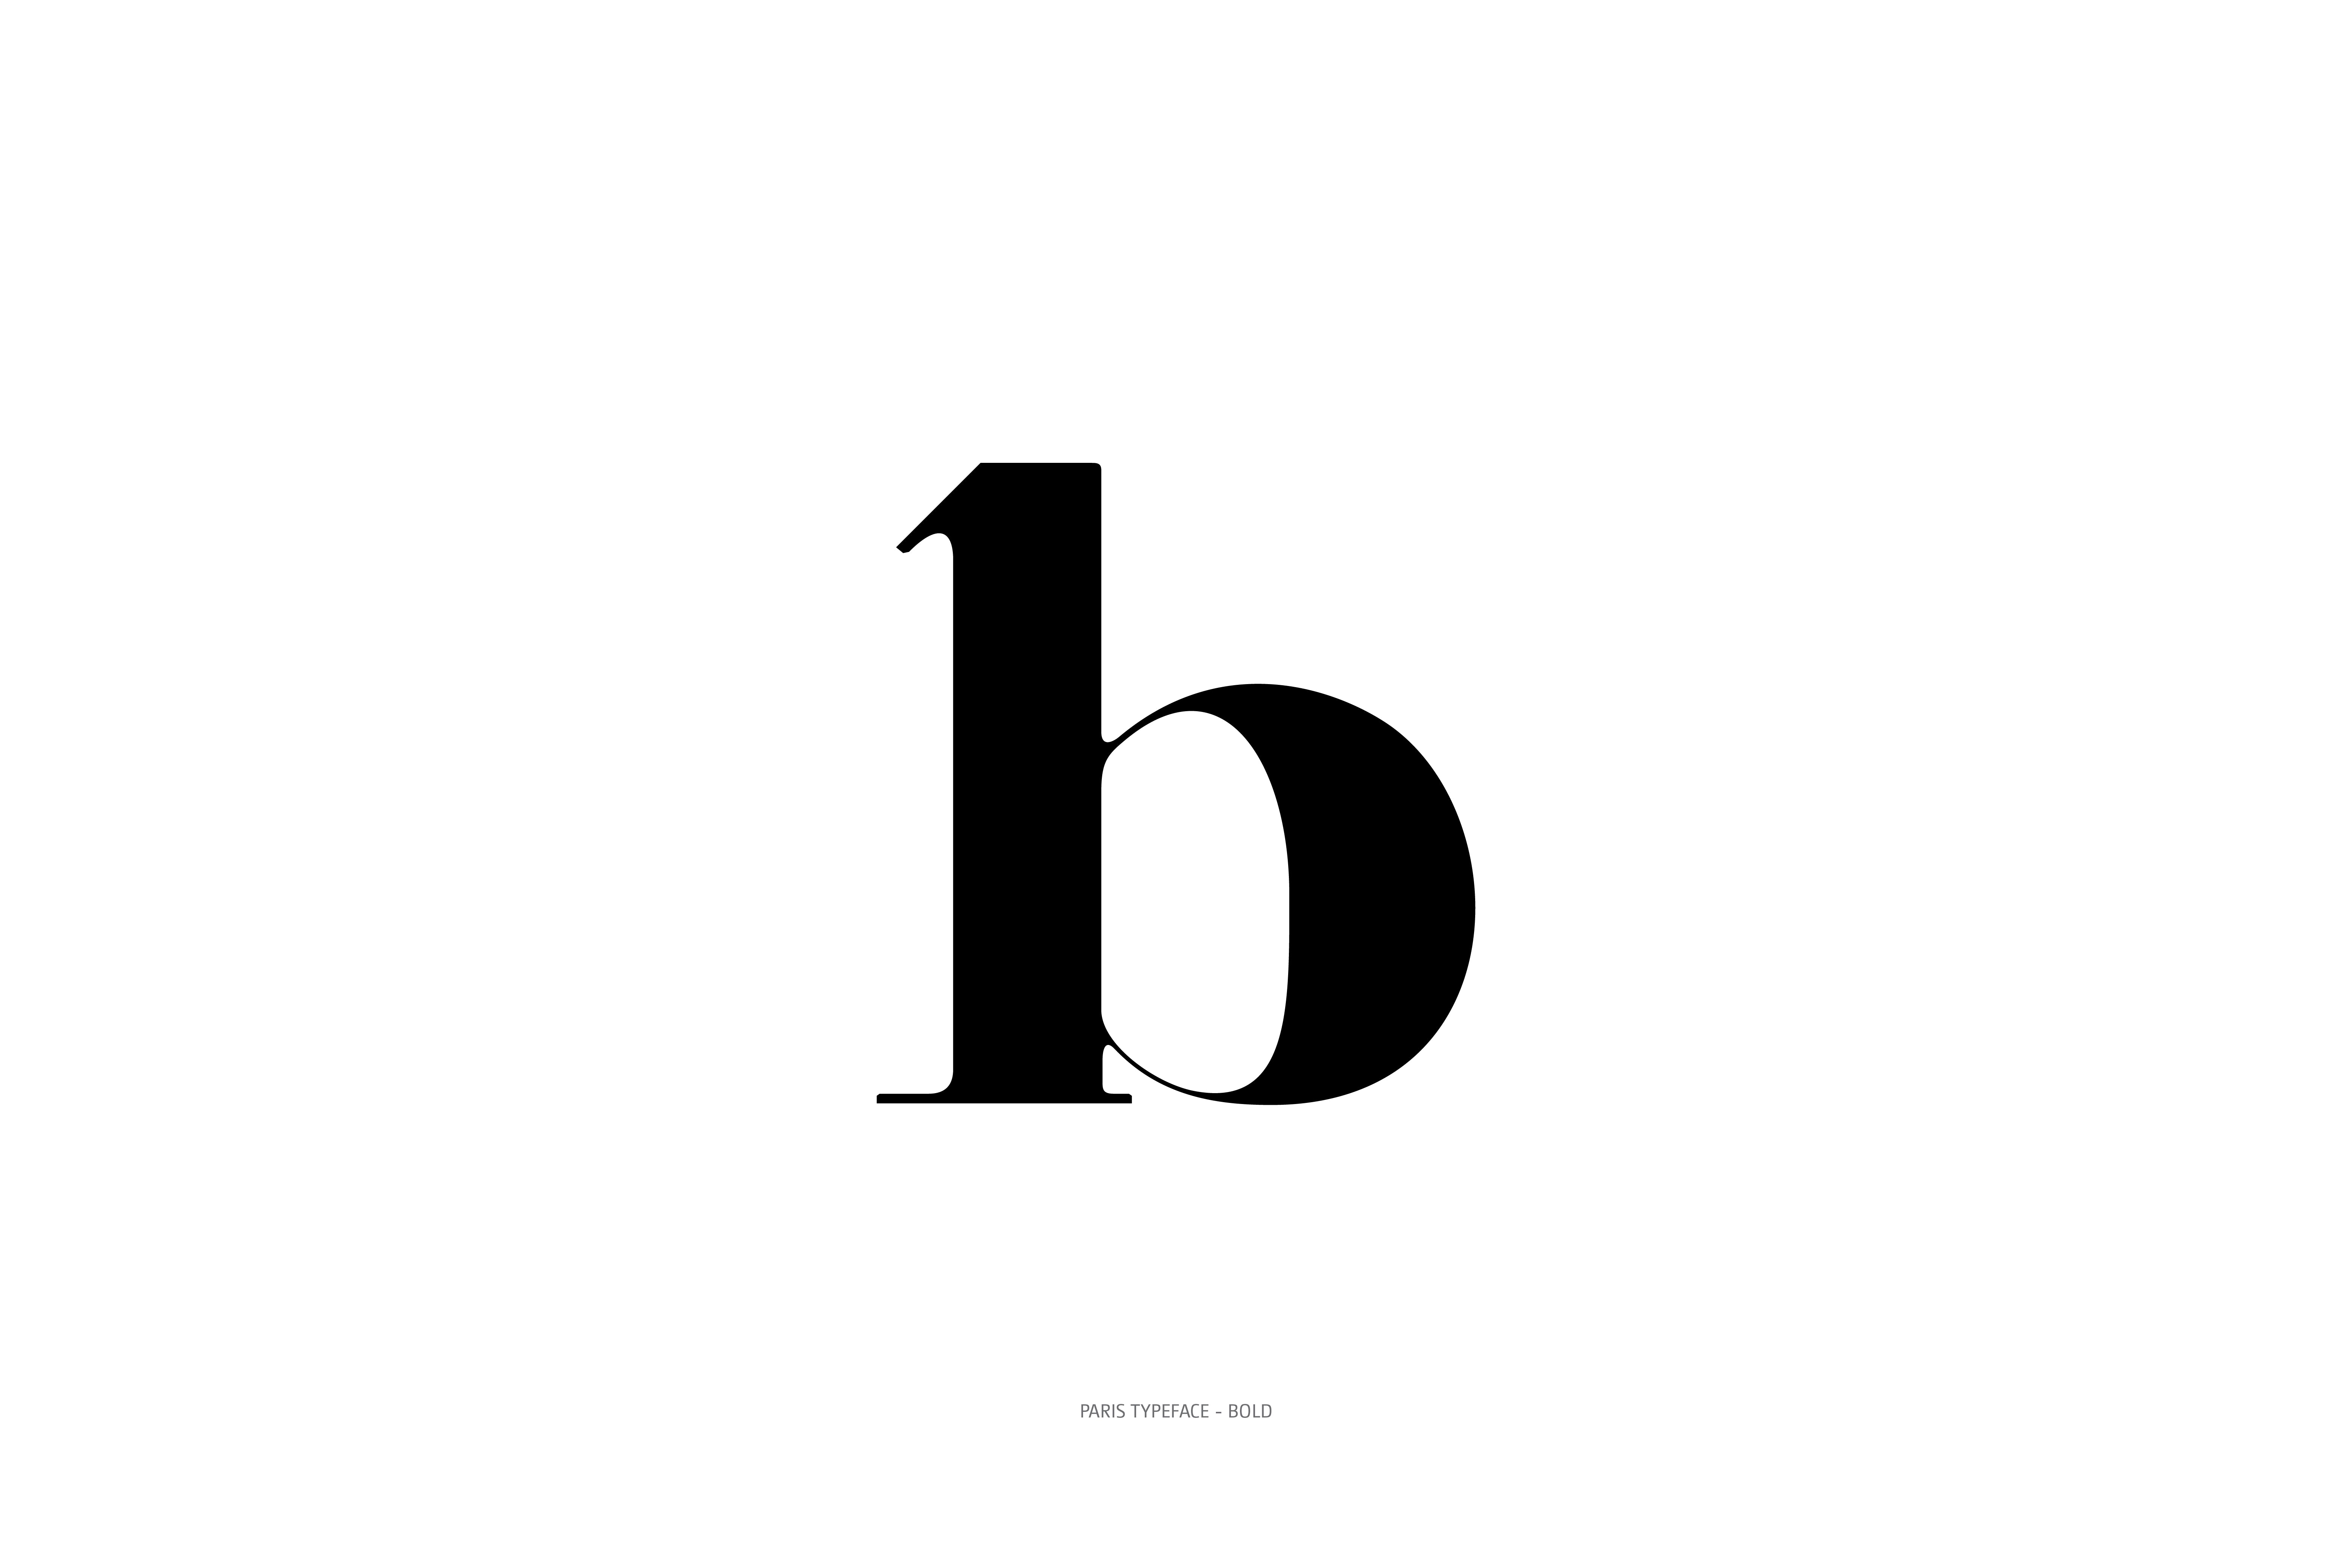 Paris Typeface Bold Plain b